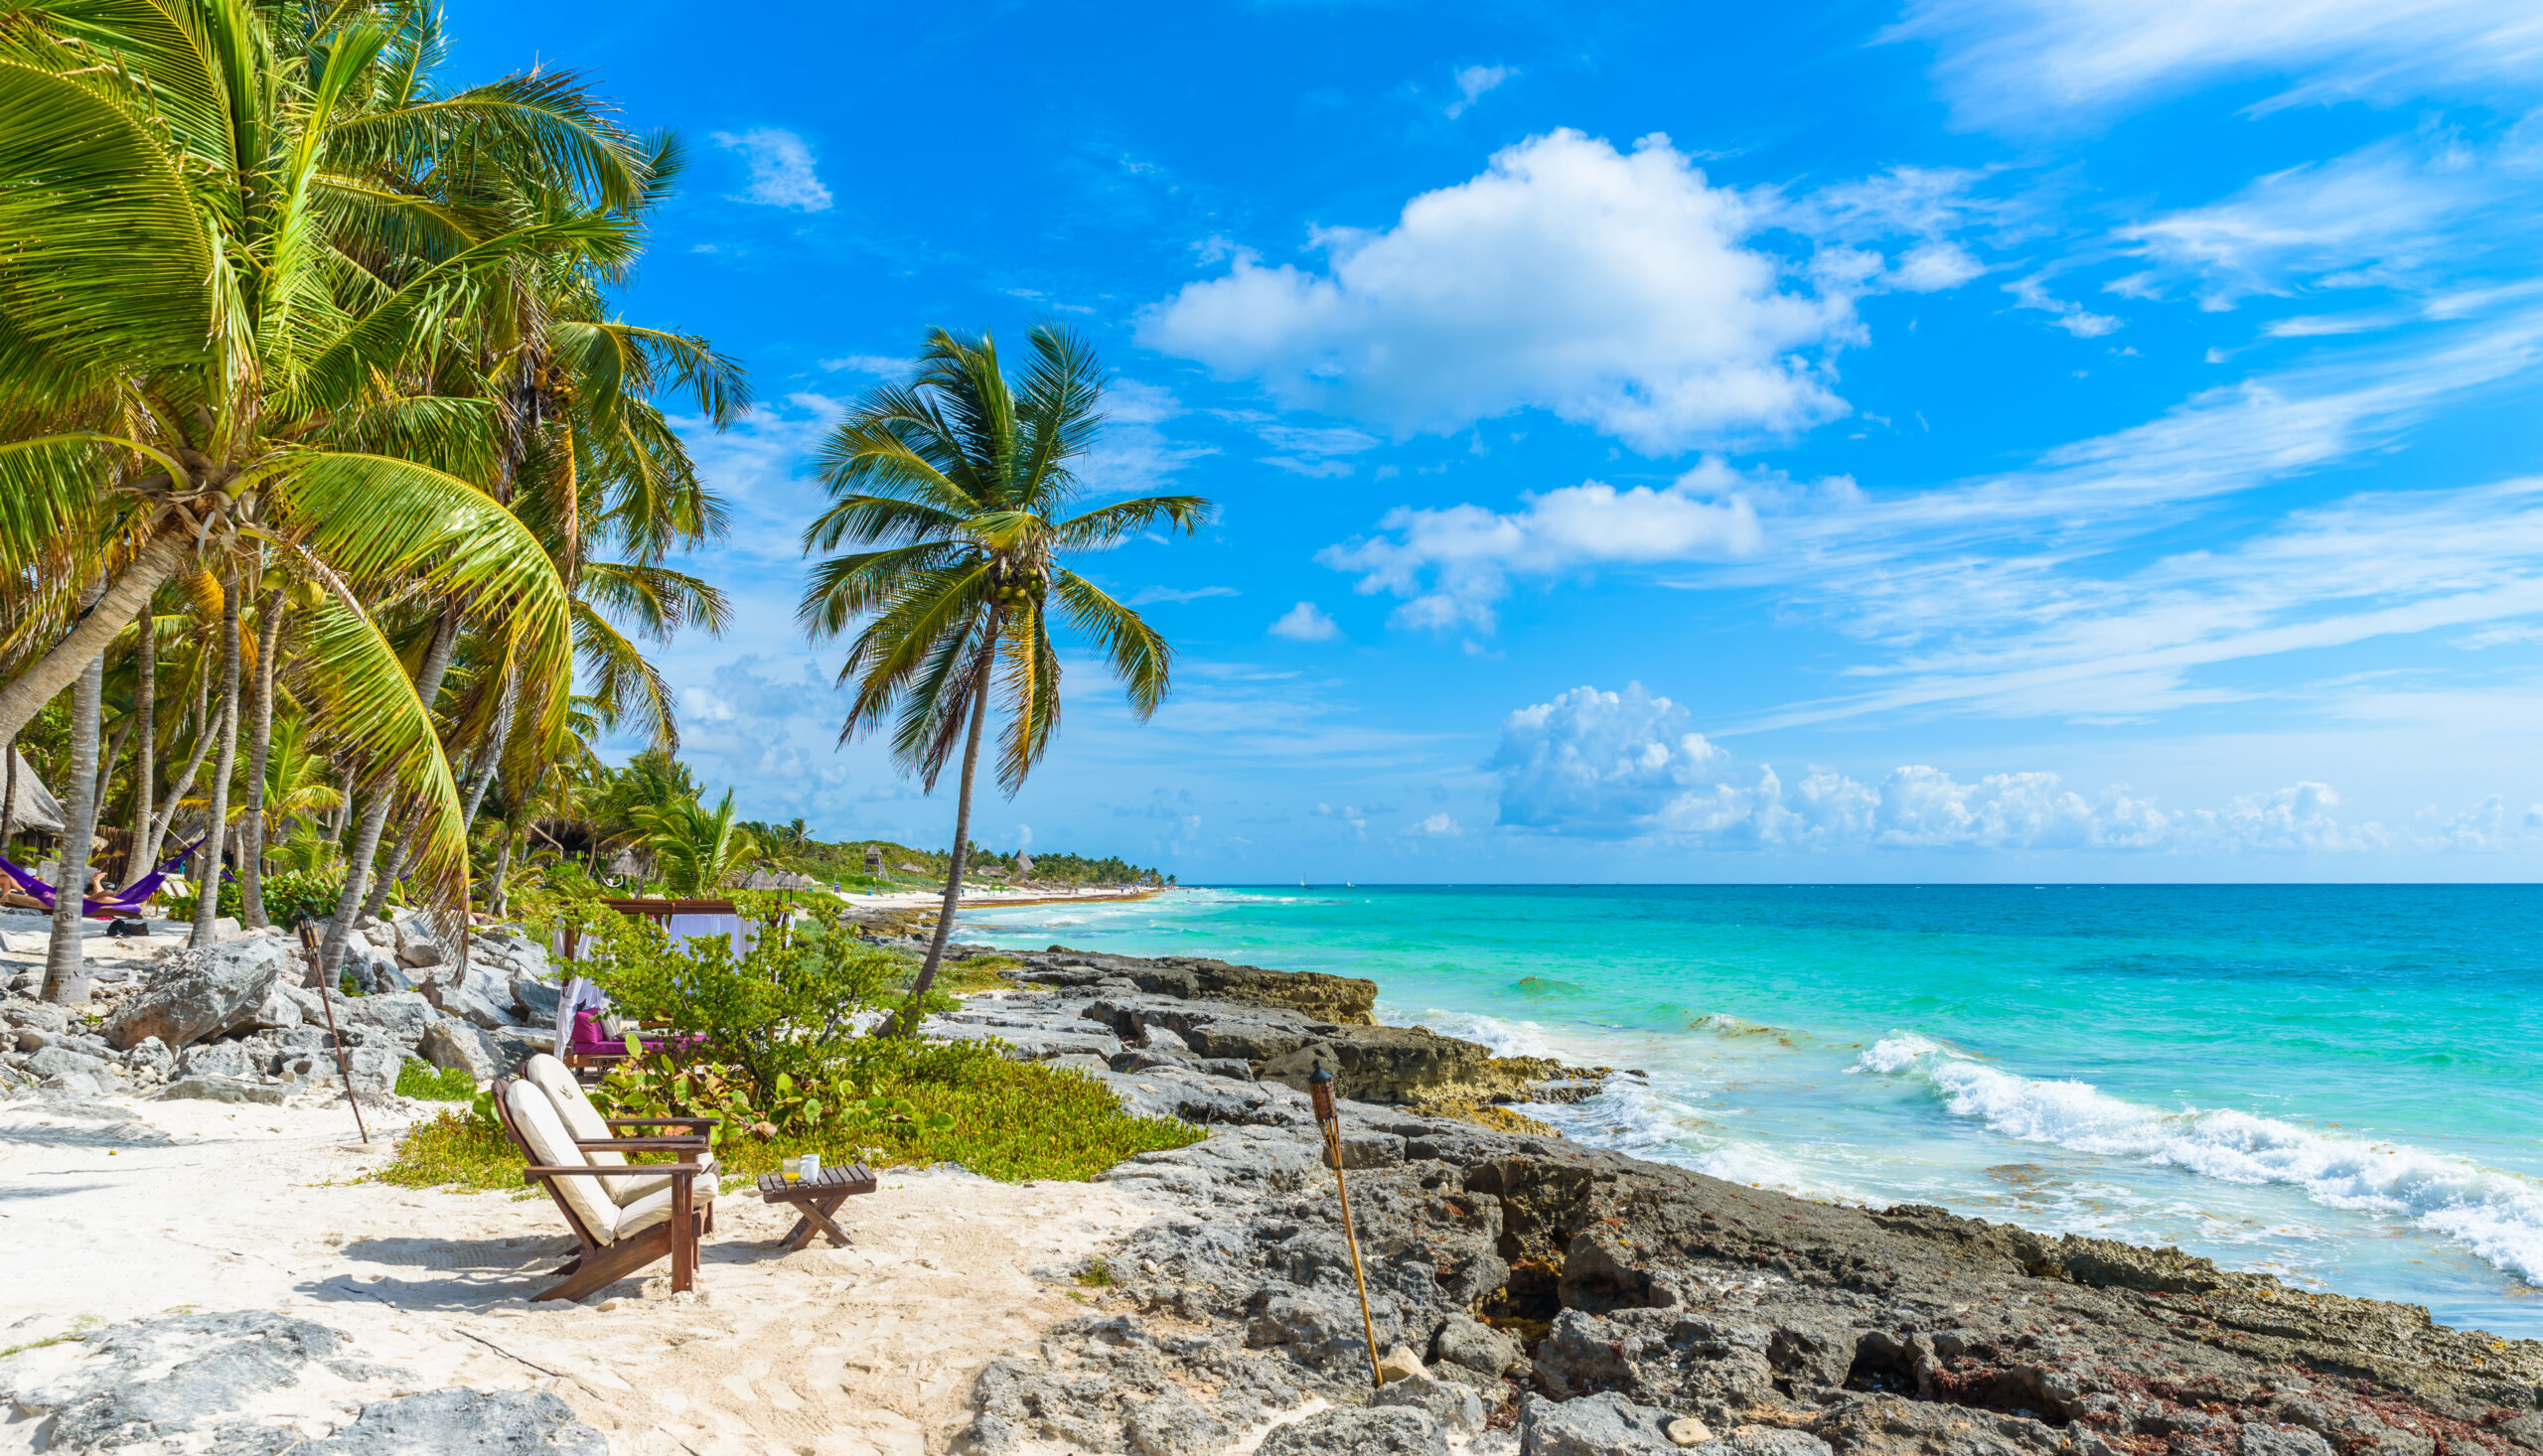 Krzesła pod palmami na rajskiej plaży w tropikalnym ośrodku. Riviera Maya - wybrzeże Karaibów w Tulum w Quintana Roo, Meksyk